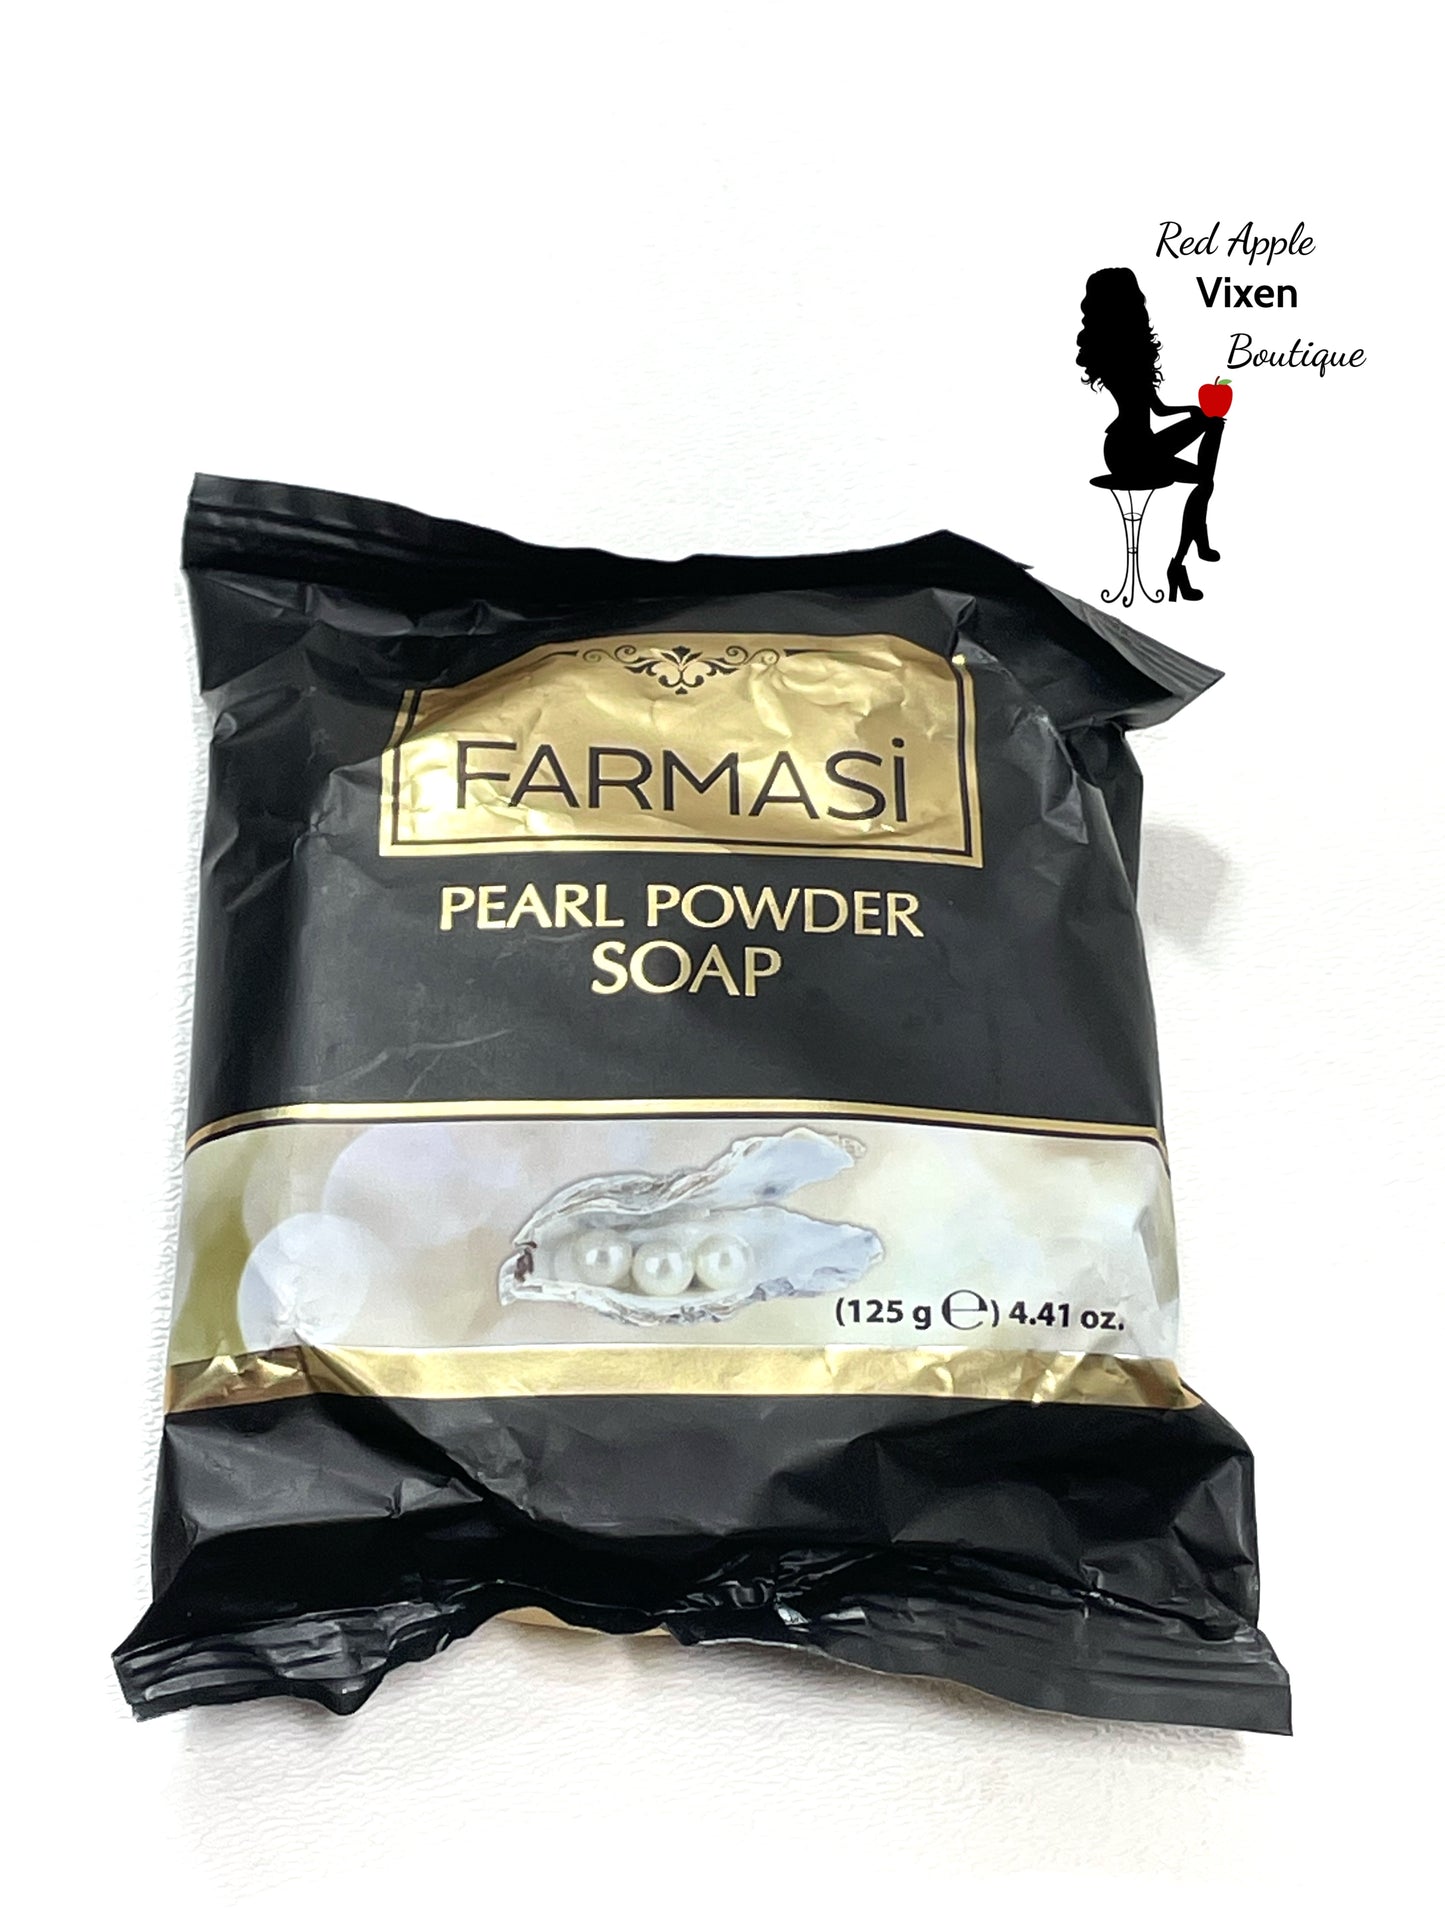 Farmasi Pearl Powder Soap - Red Apple Vixen Boutique